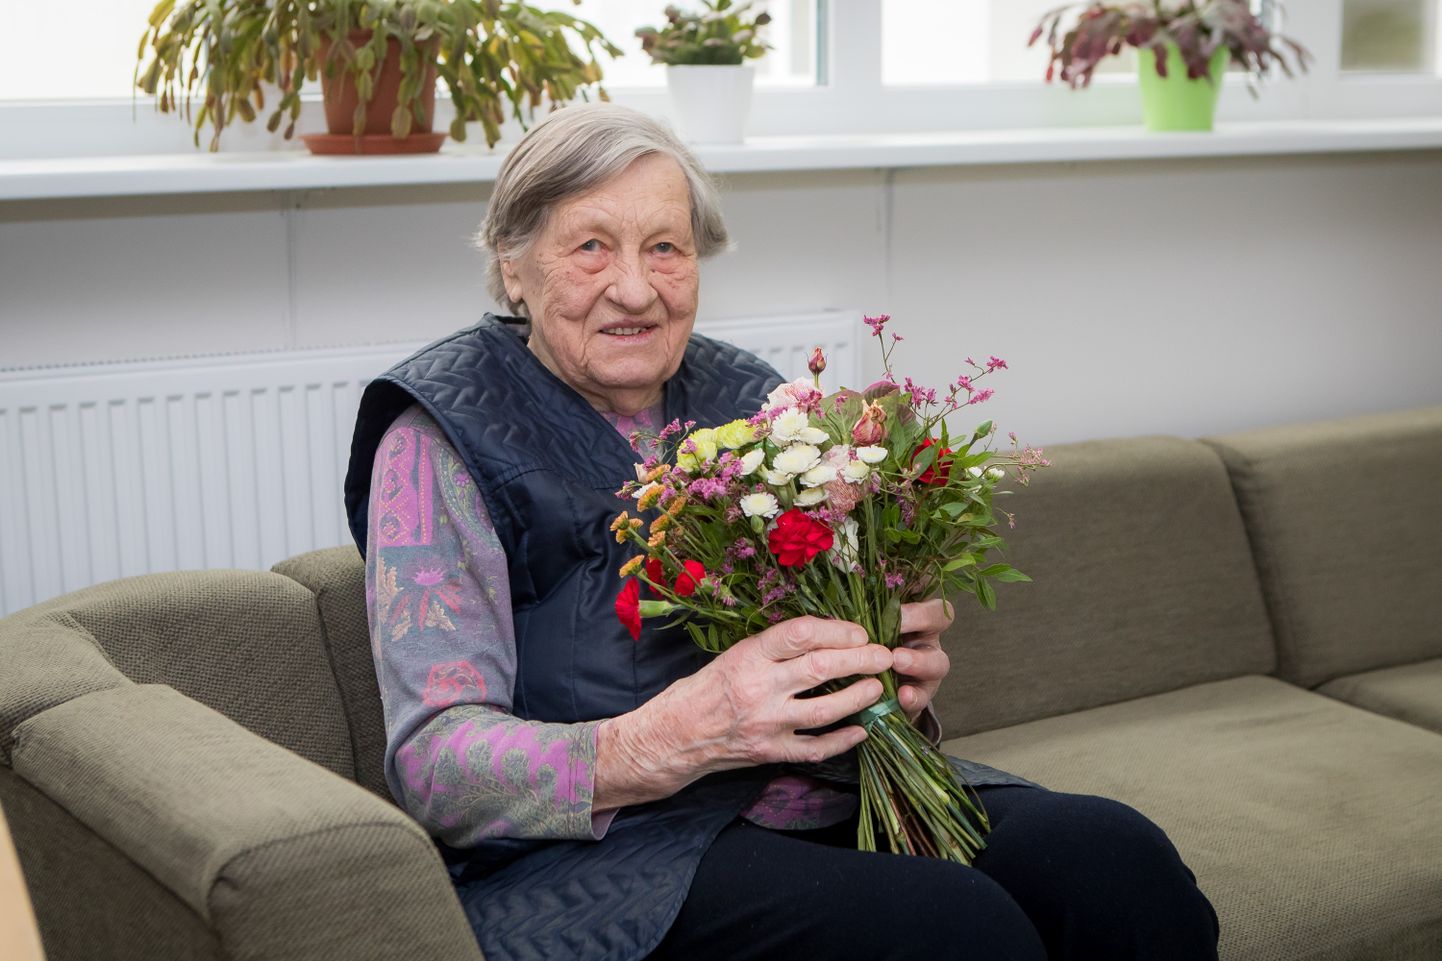 VITAALNE JA ELUJÕULINE: Selma Leesi ütles, et pole ise oma elus veel ühtki 101-aastast kohanudki, ja rõõmustas ka, et ta jätkuvalt niivõrd paljudel inimestel meeles püsib.